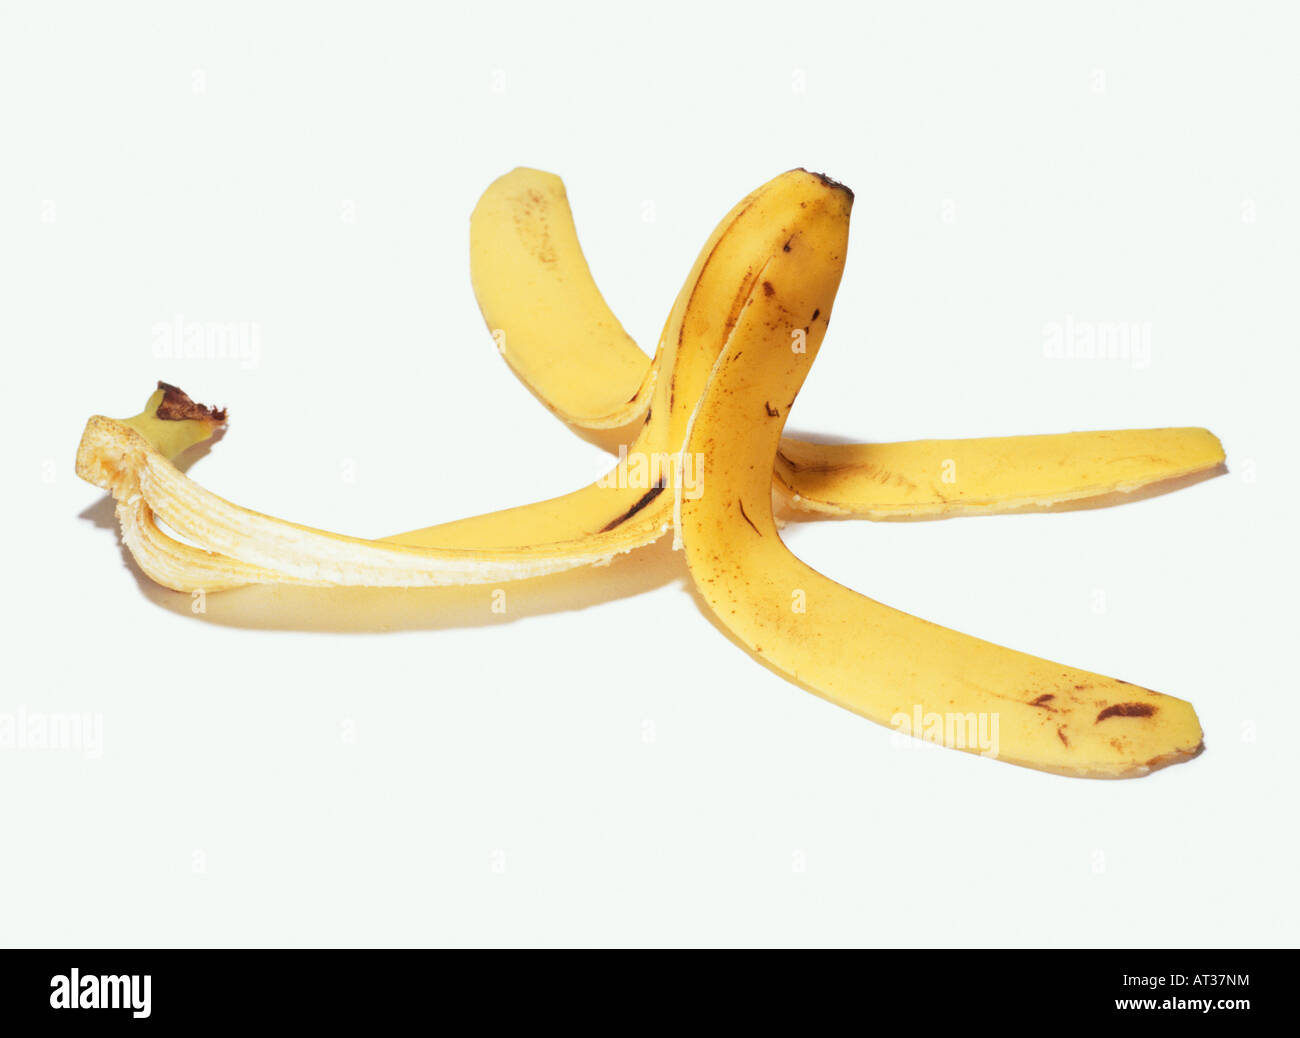 A banana skin Stock Photo